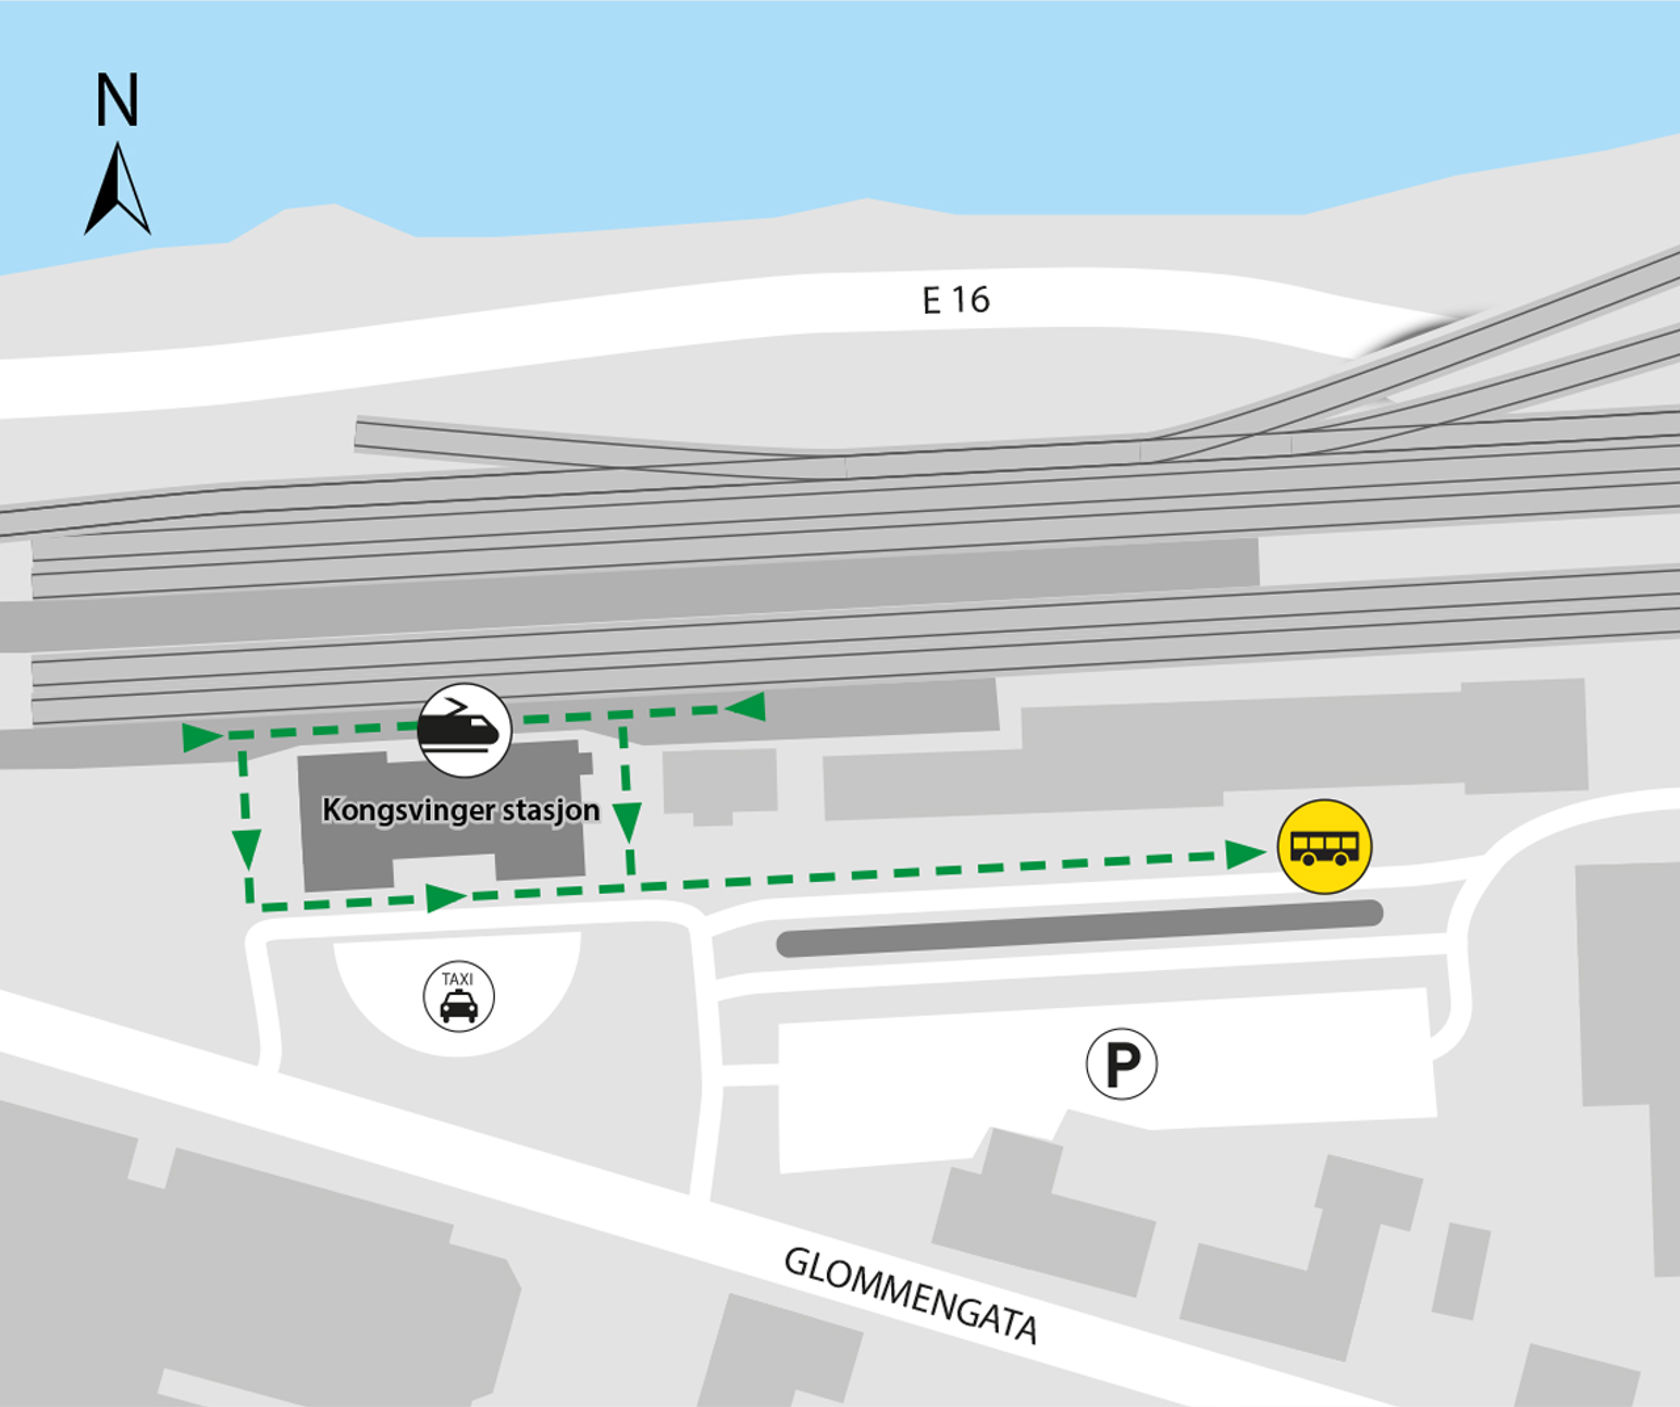 Kartet viser at bussene kjører fra bussholdeplassen Kongsvinger stasjon, plattform 4. 